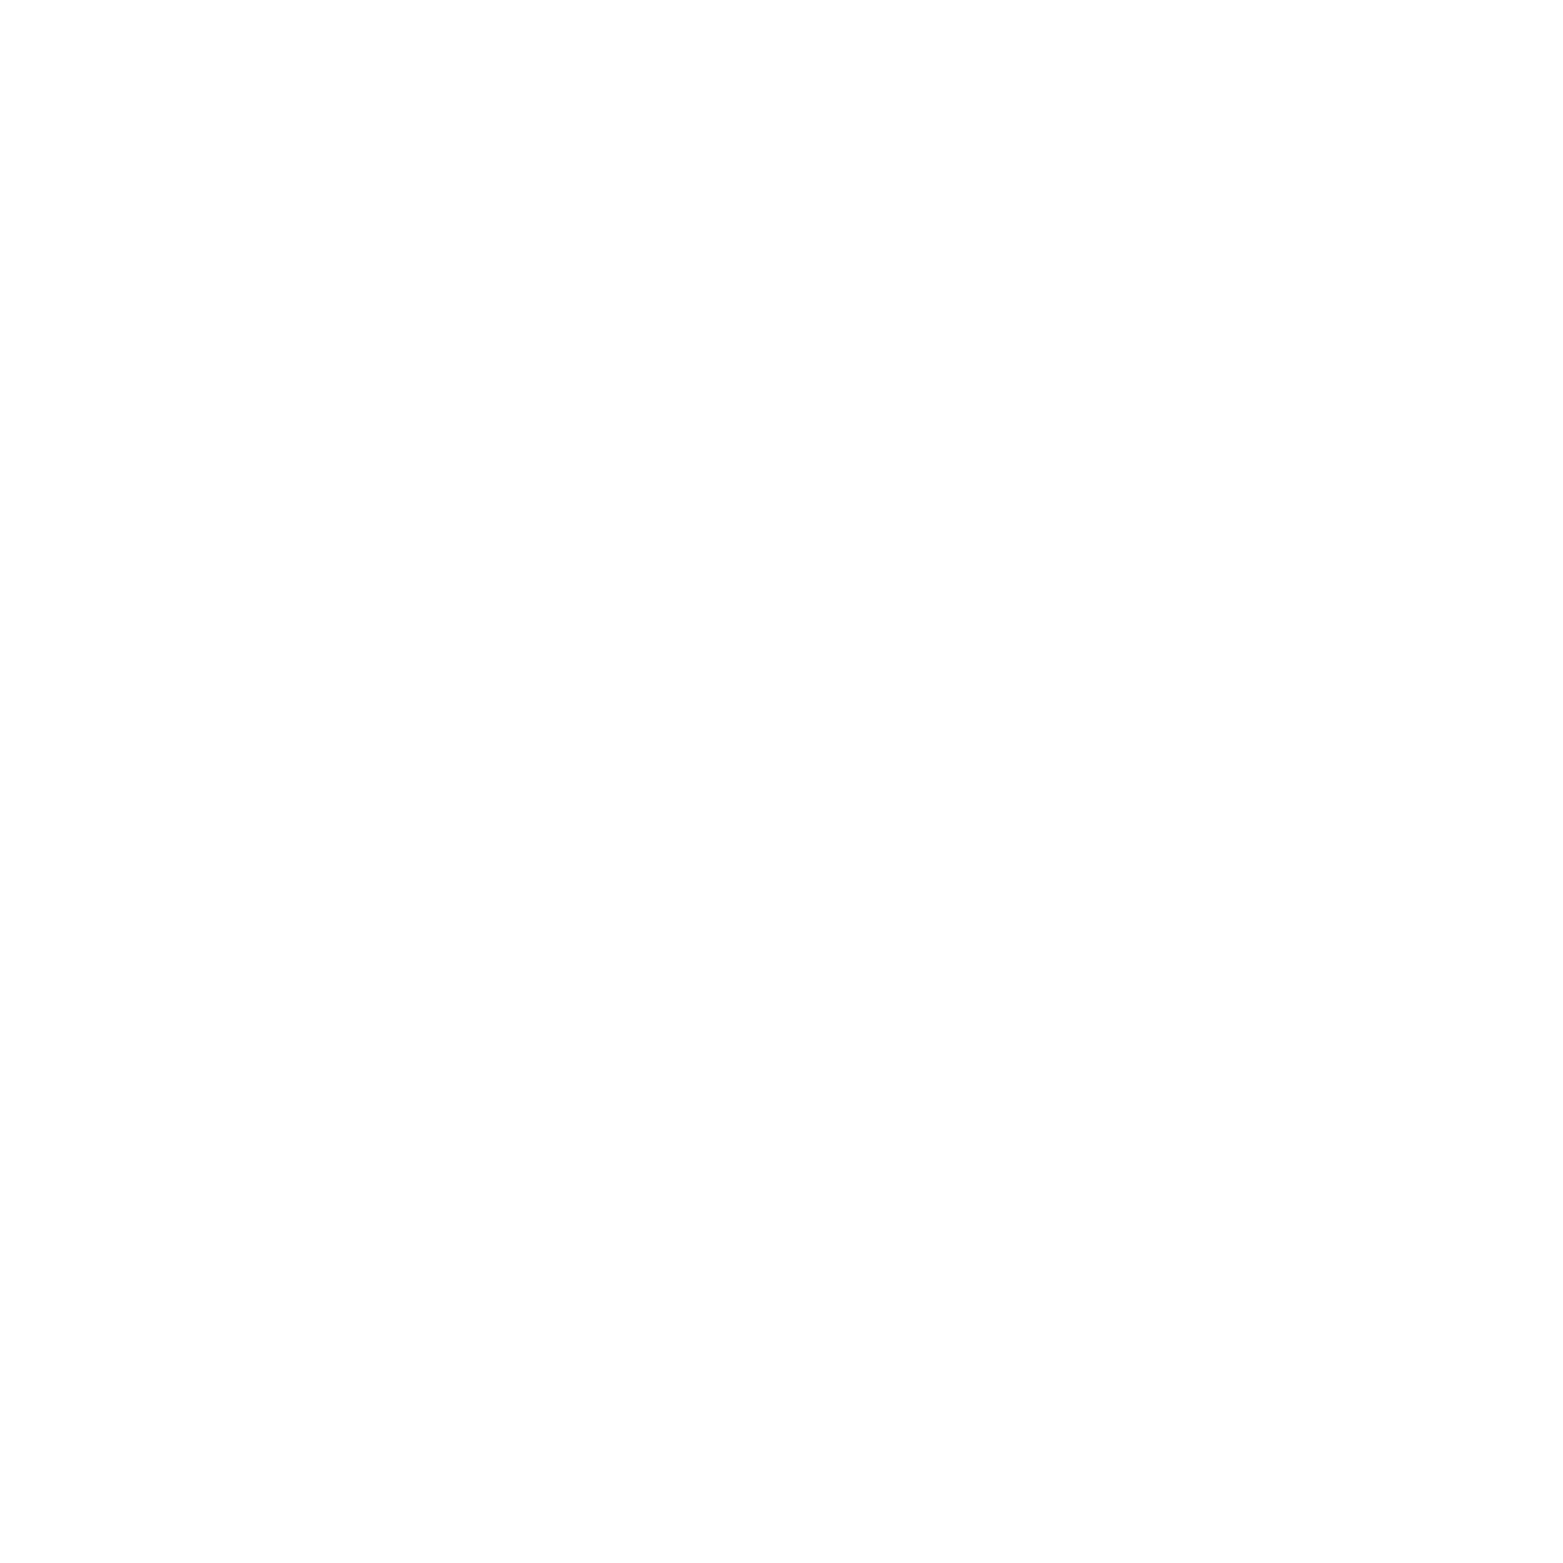 BAZA Fashion